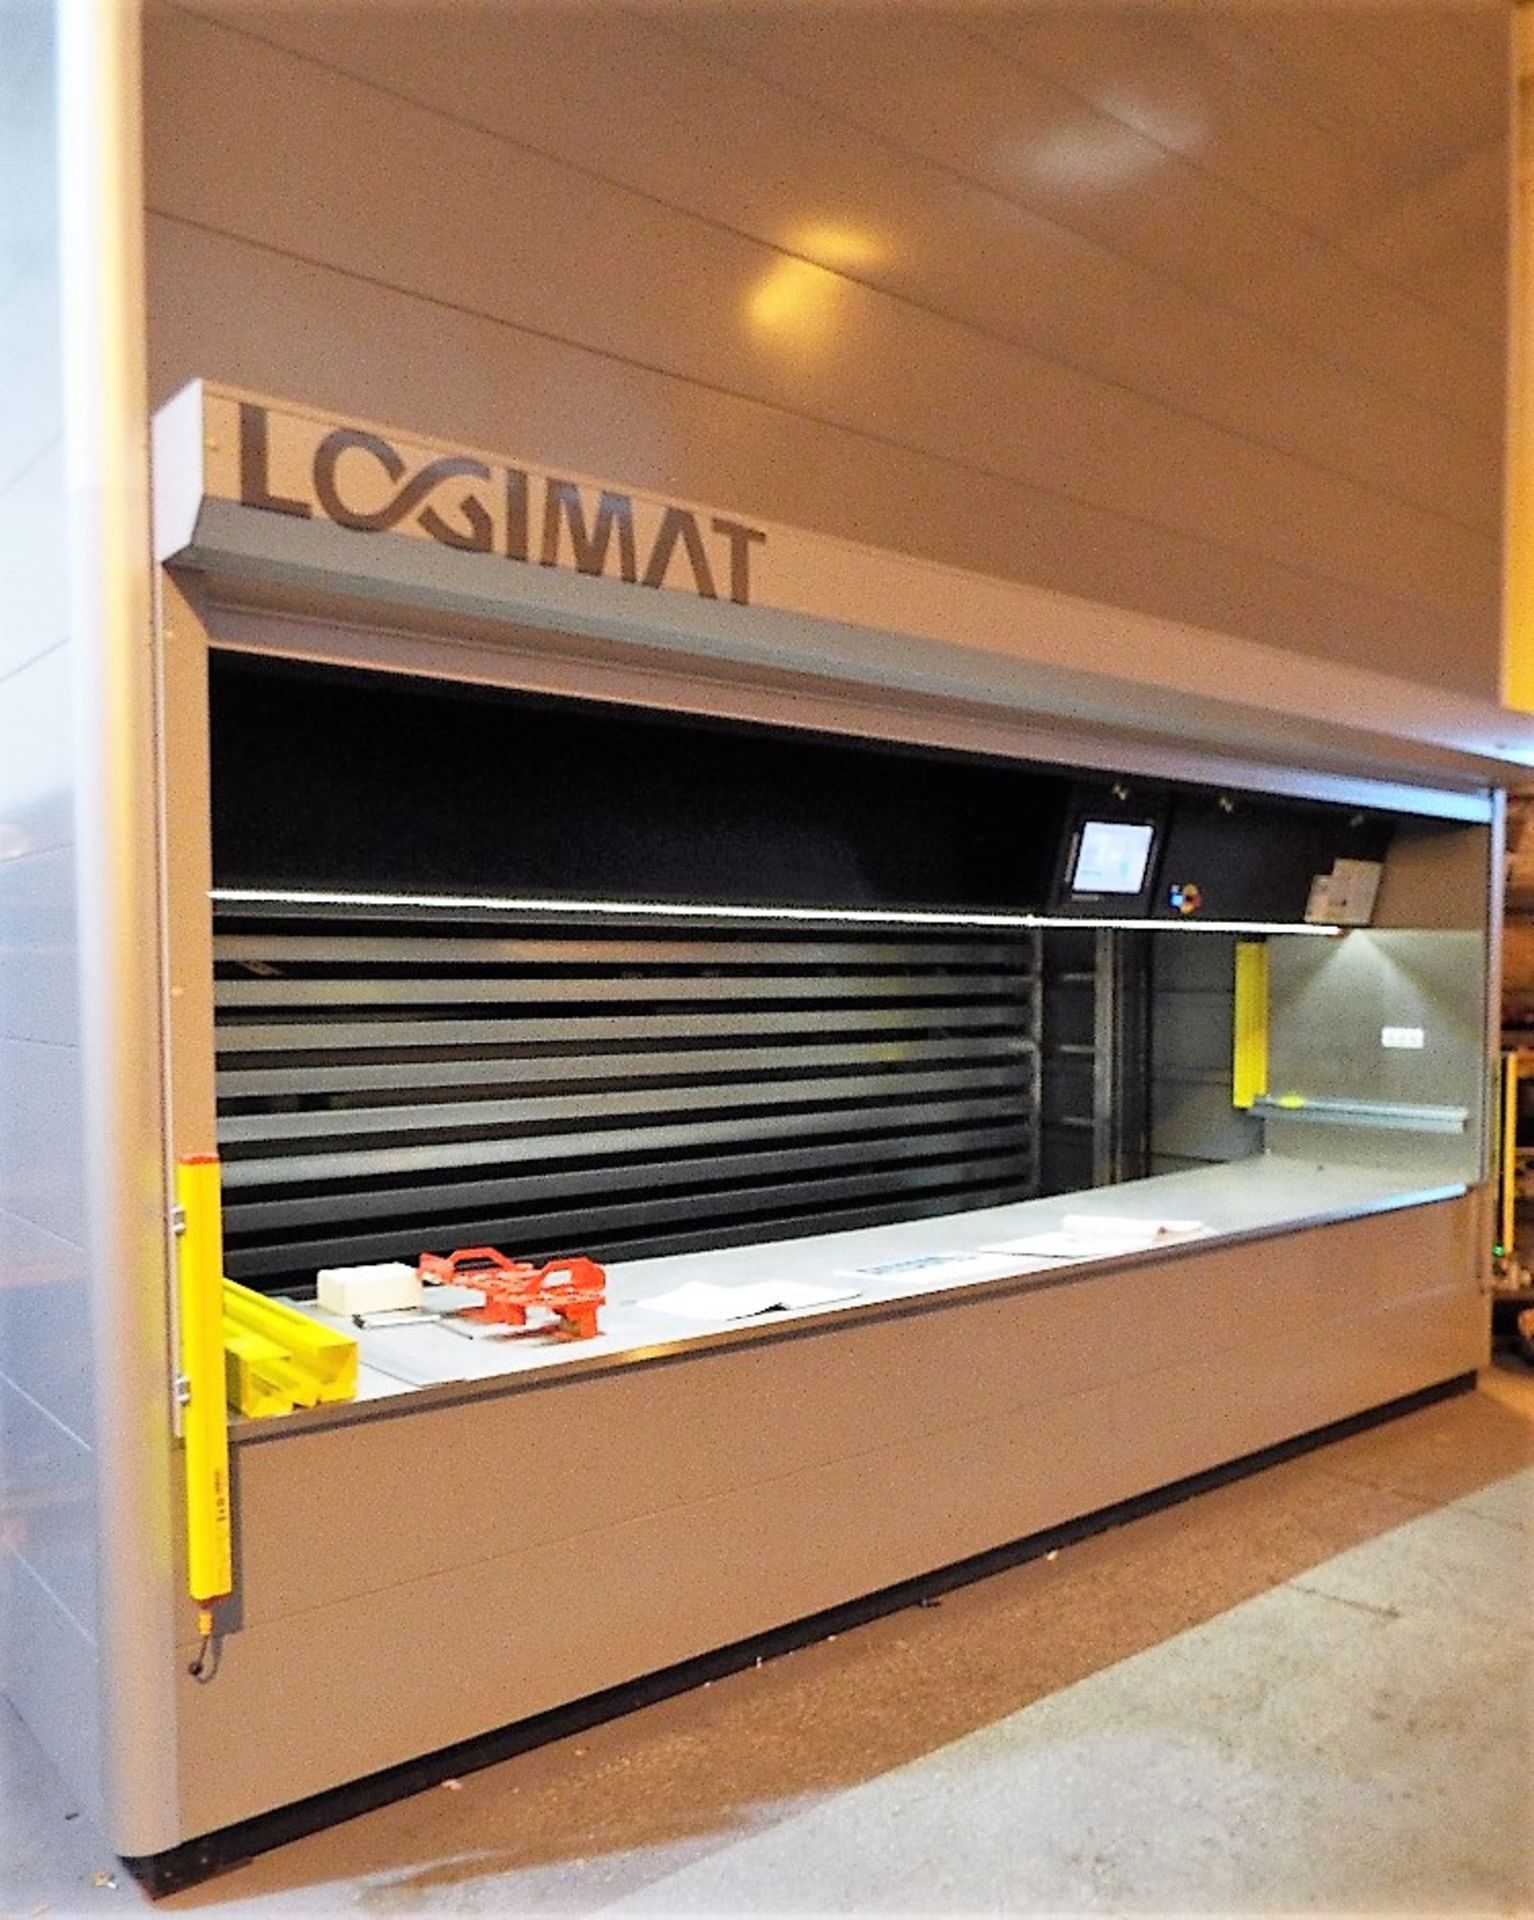 SSI Schaefer Logimat Type HL Storage Lift.